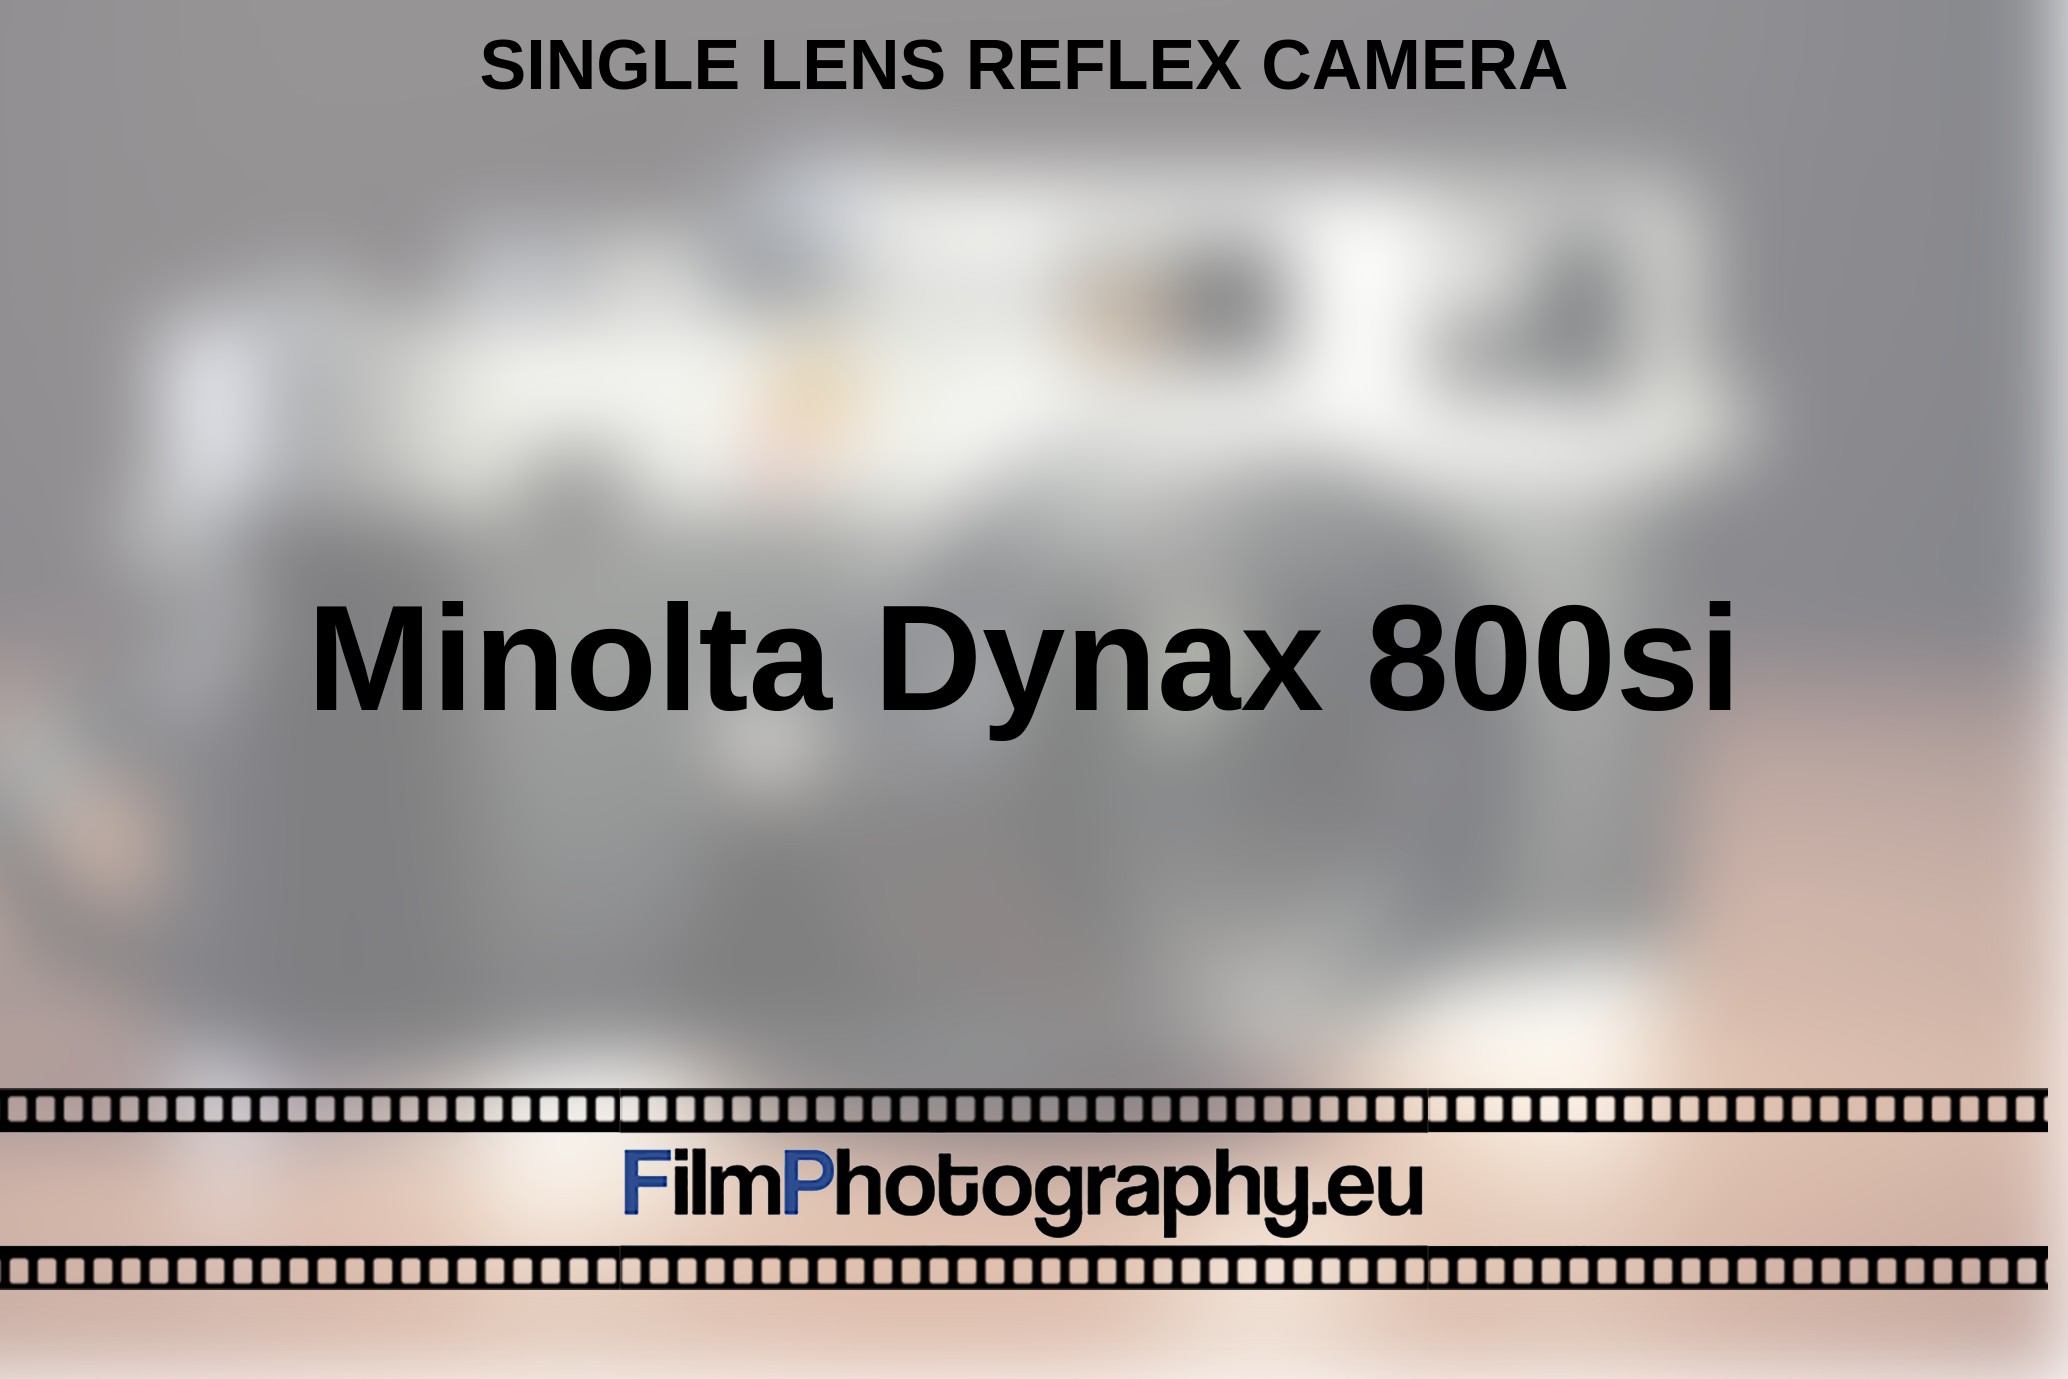 Minolta-Dynax-800si-single-lens-reflex-camera-bnv.jpg